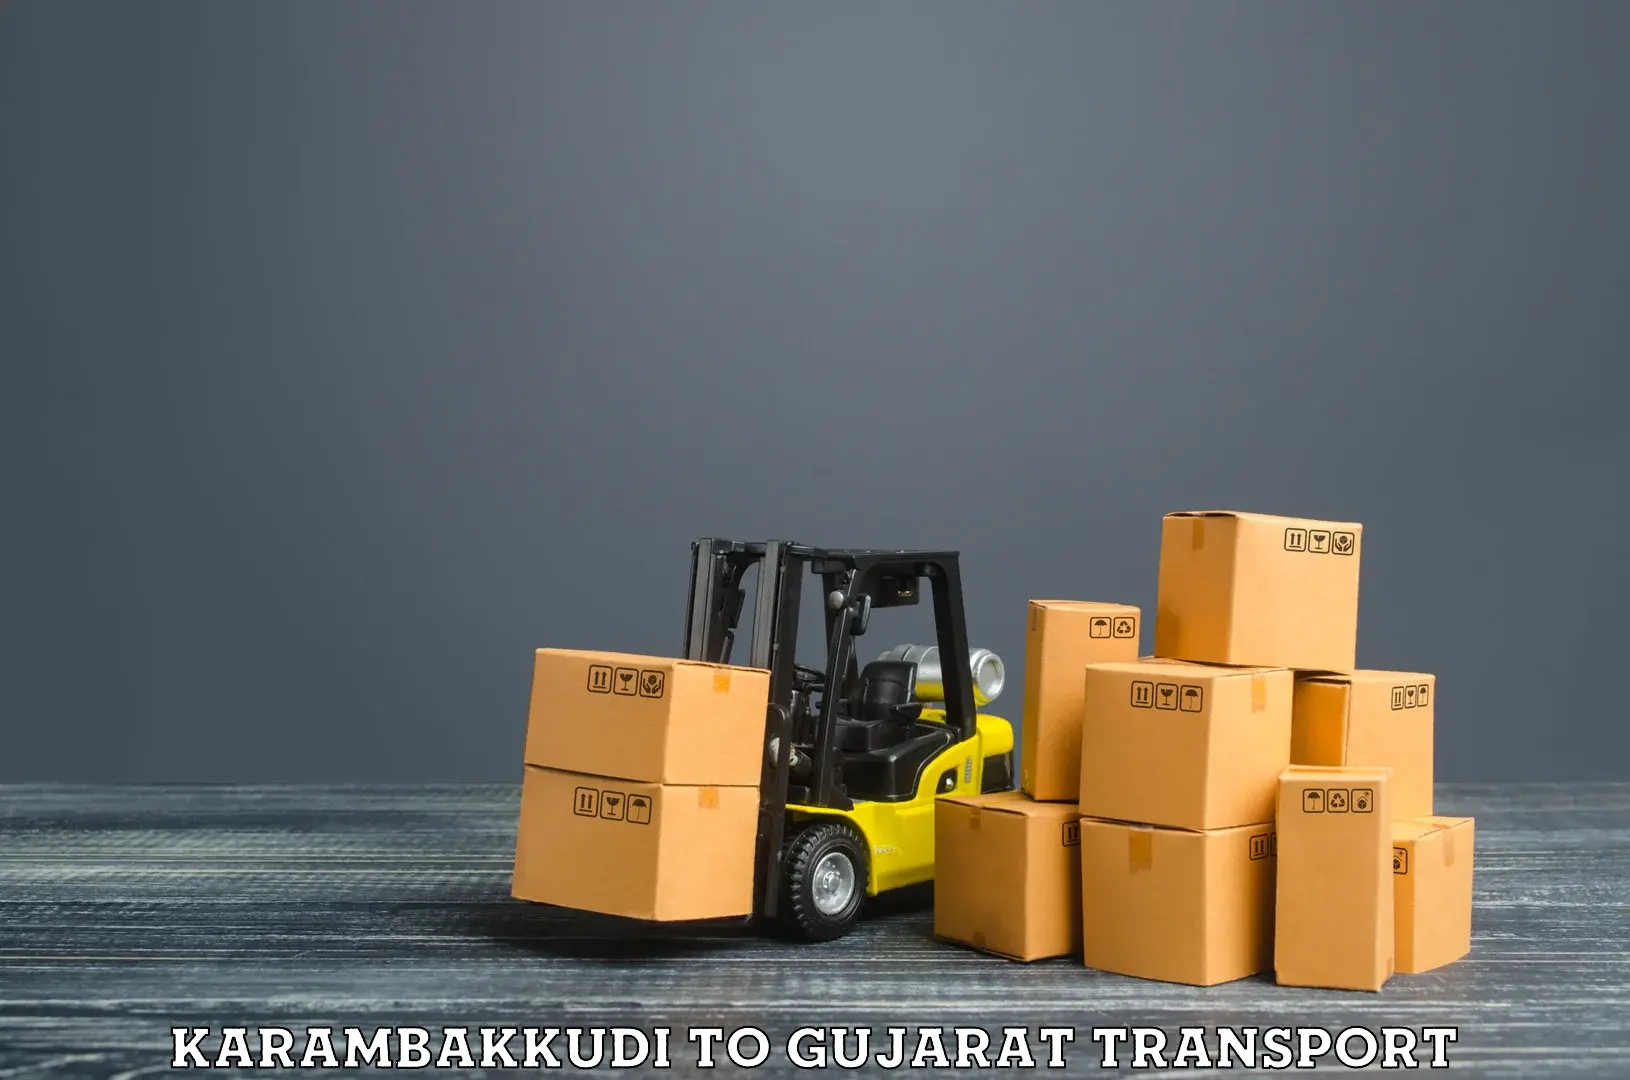 Transport shared services Karambakkudi to NIT Surat